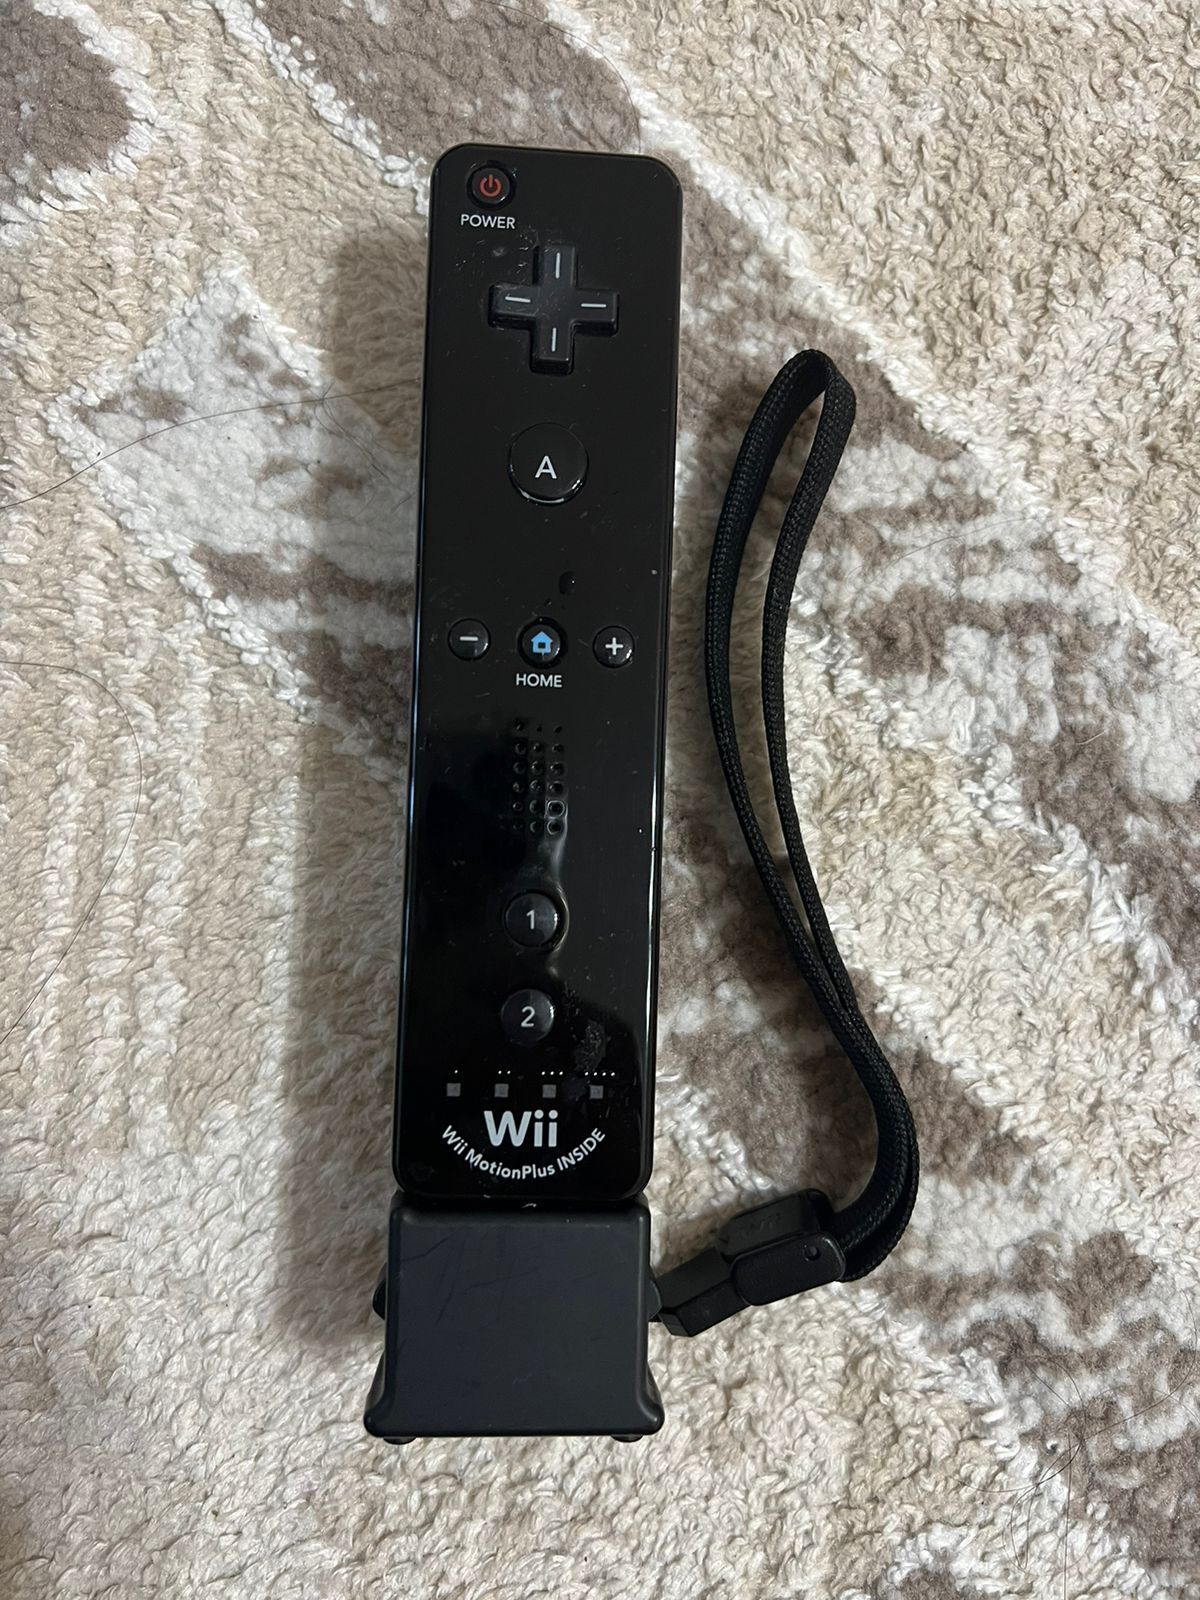 Продам игровую консоль Это Nintendo Wii RVL-001